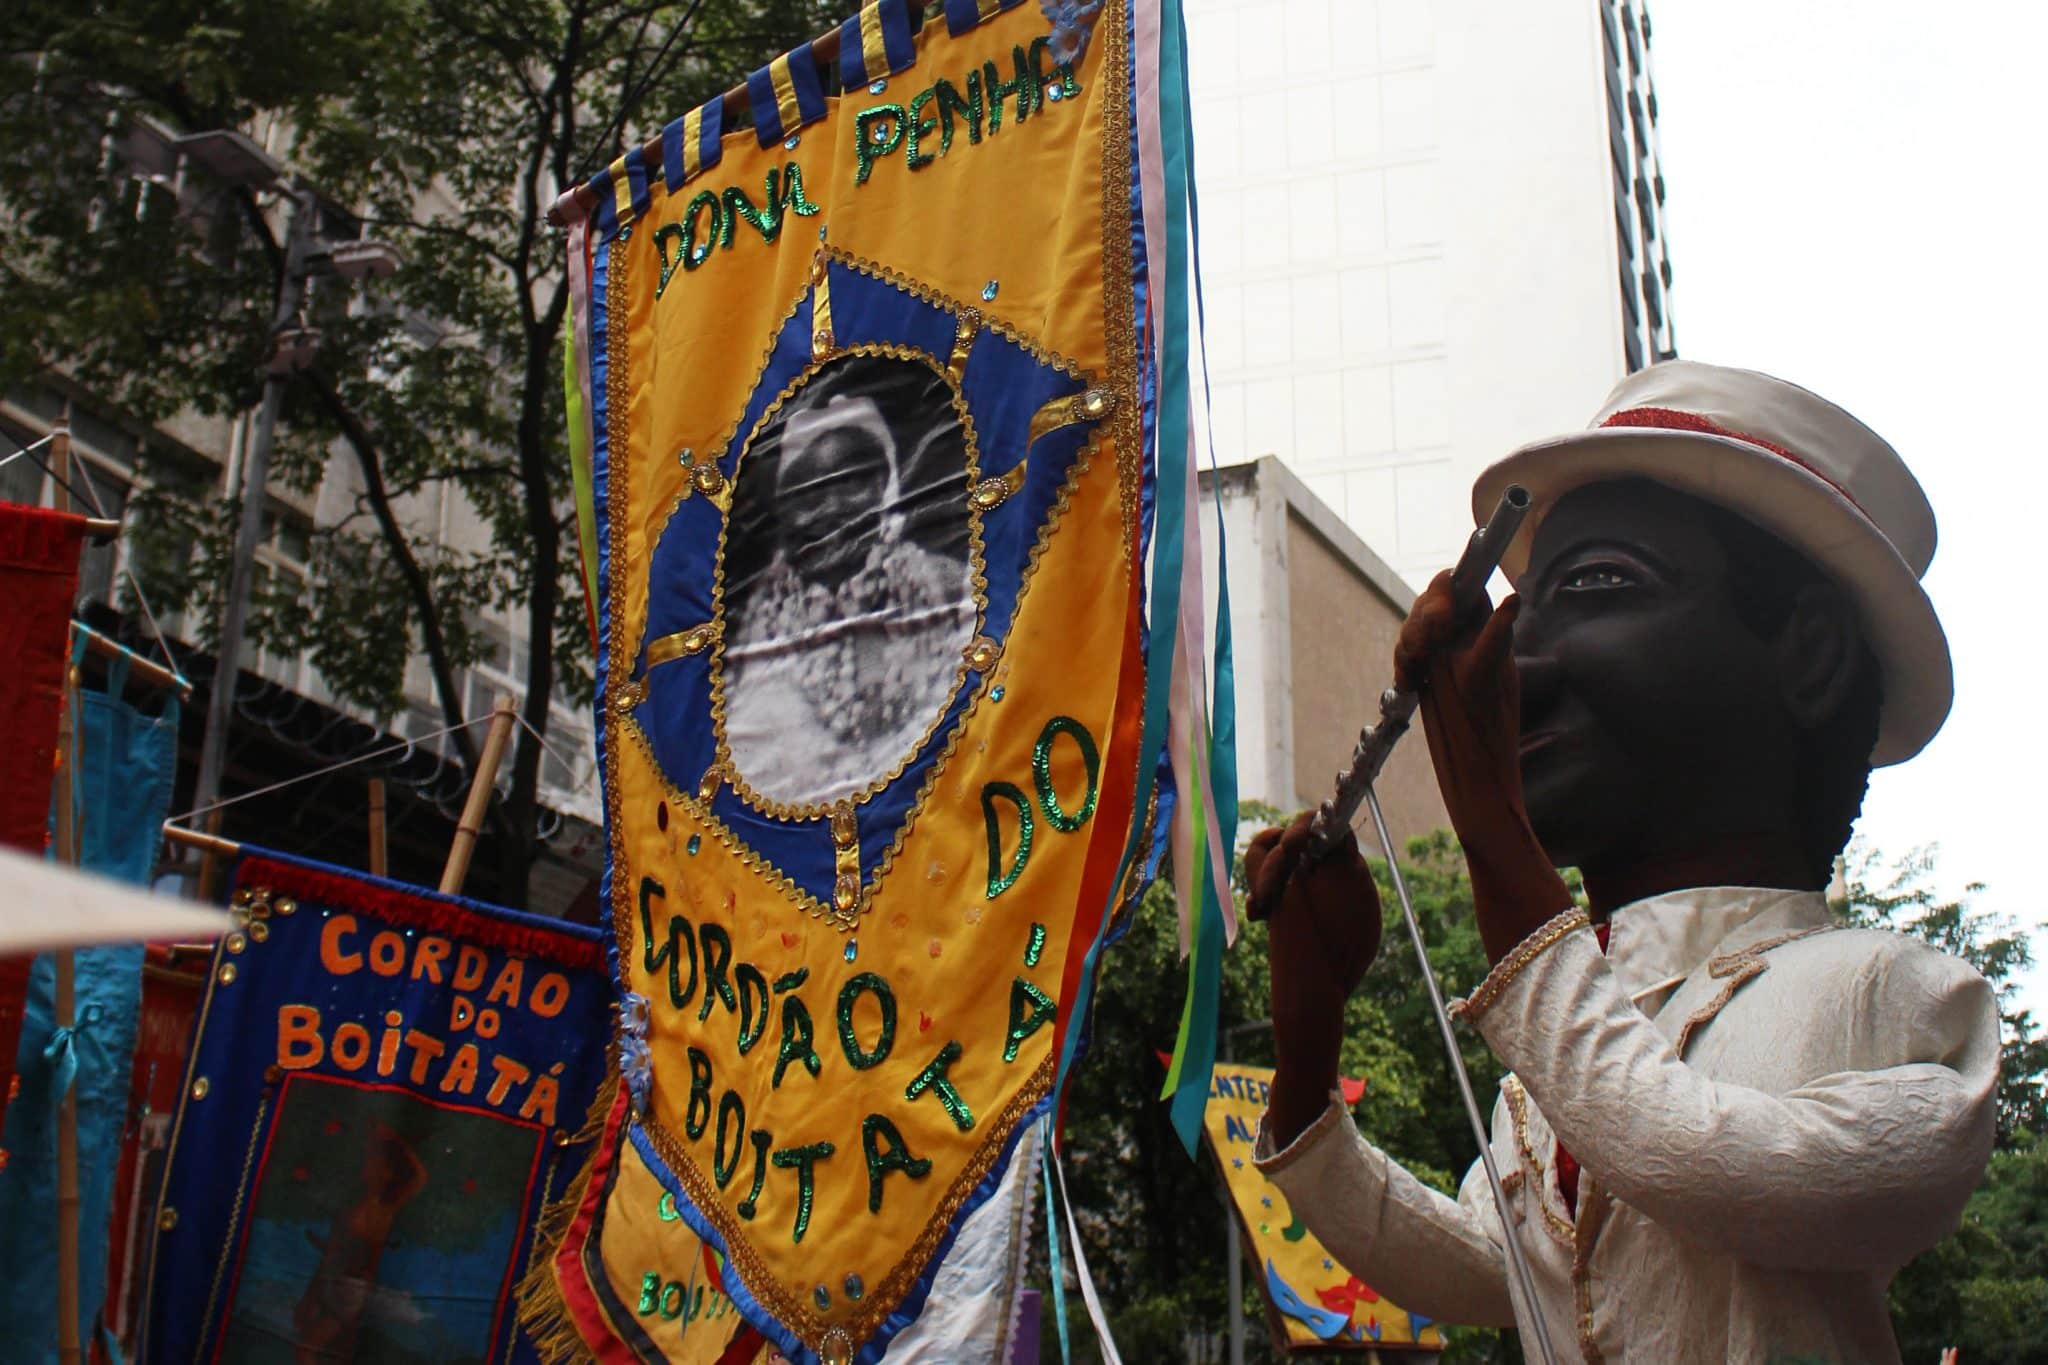 revistaprosaversoearte.com - Cordão do Boitatá: 28 anos de um dos maiores símbolos do carnaval de rua do Rio de Janeiro